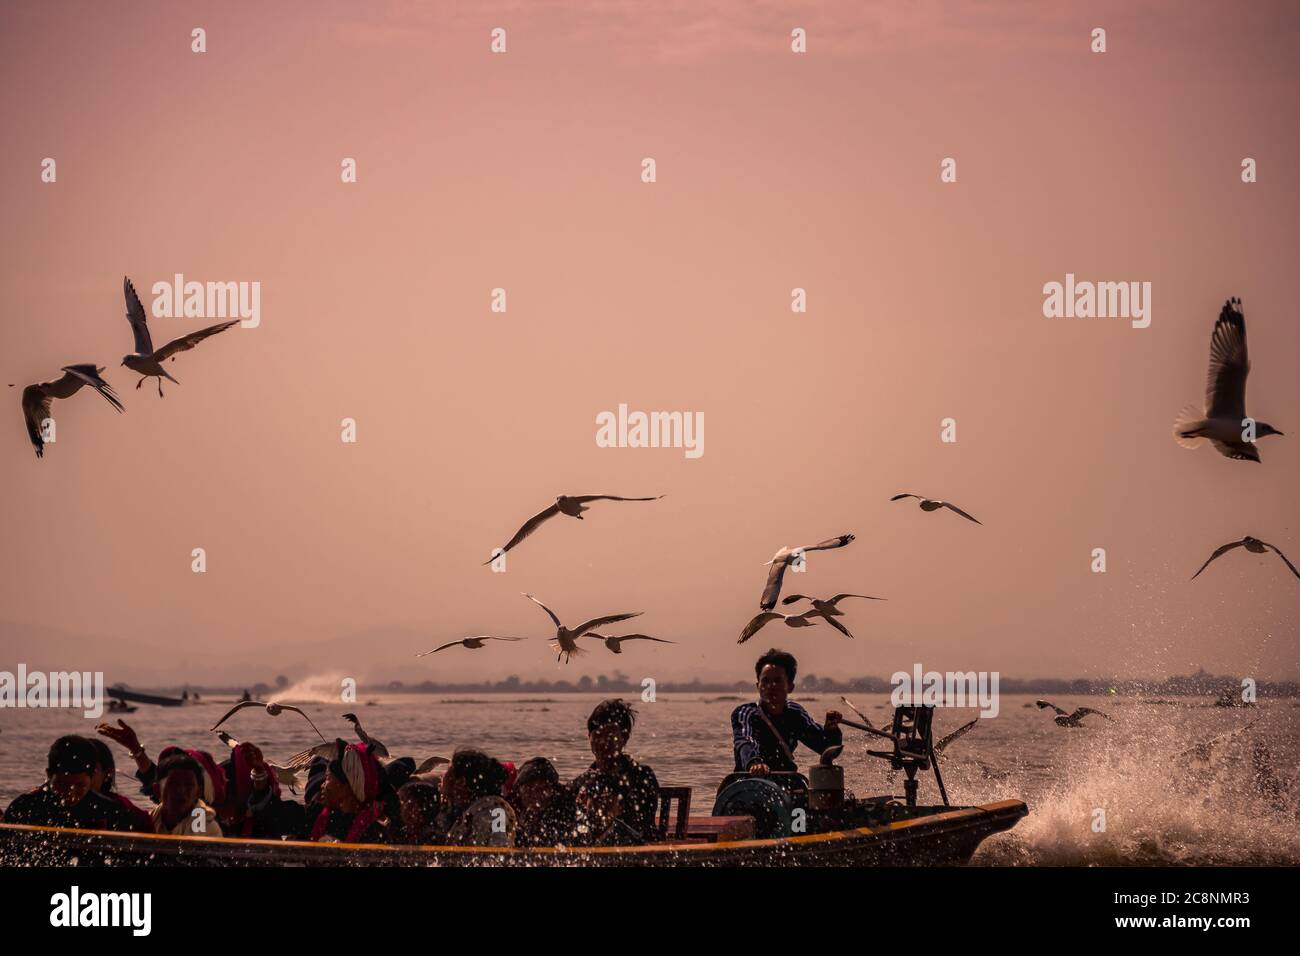 Lac Inle, Myanmar - février 2020 : le troupeau de goélands suit le bateau à longue queue, lac Inle. Scène idyllique, bateau rapide avec pulvérisation d'eau, passager s. Banque D'Images